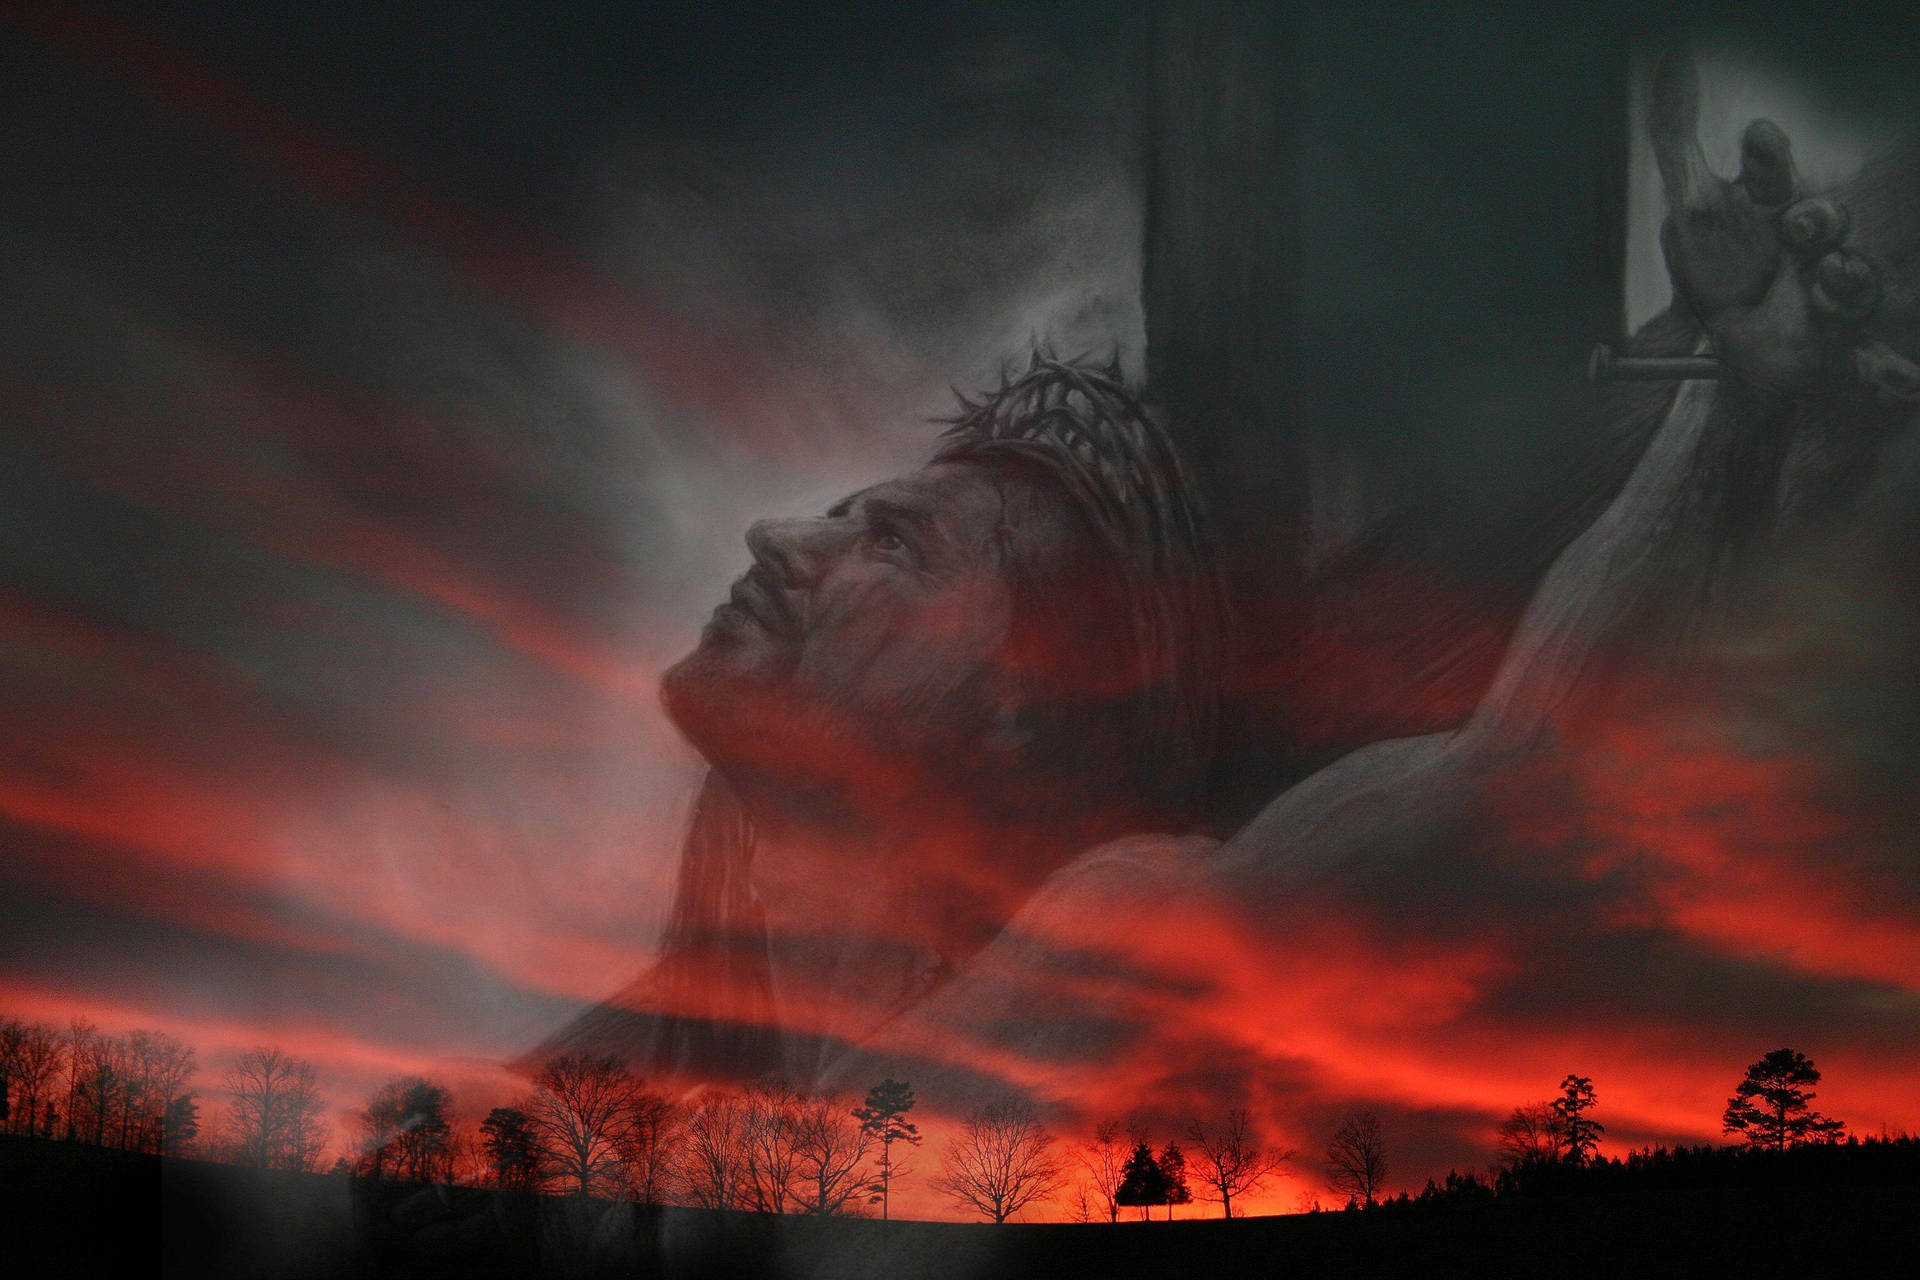 Jesus On Cross Over Landscape Artwork Background